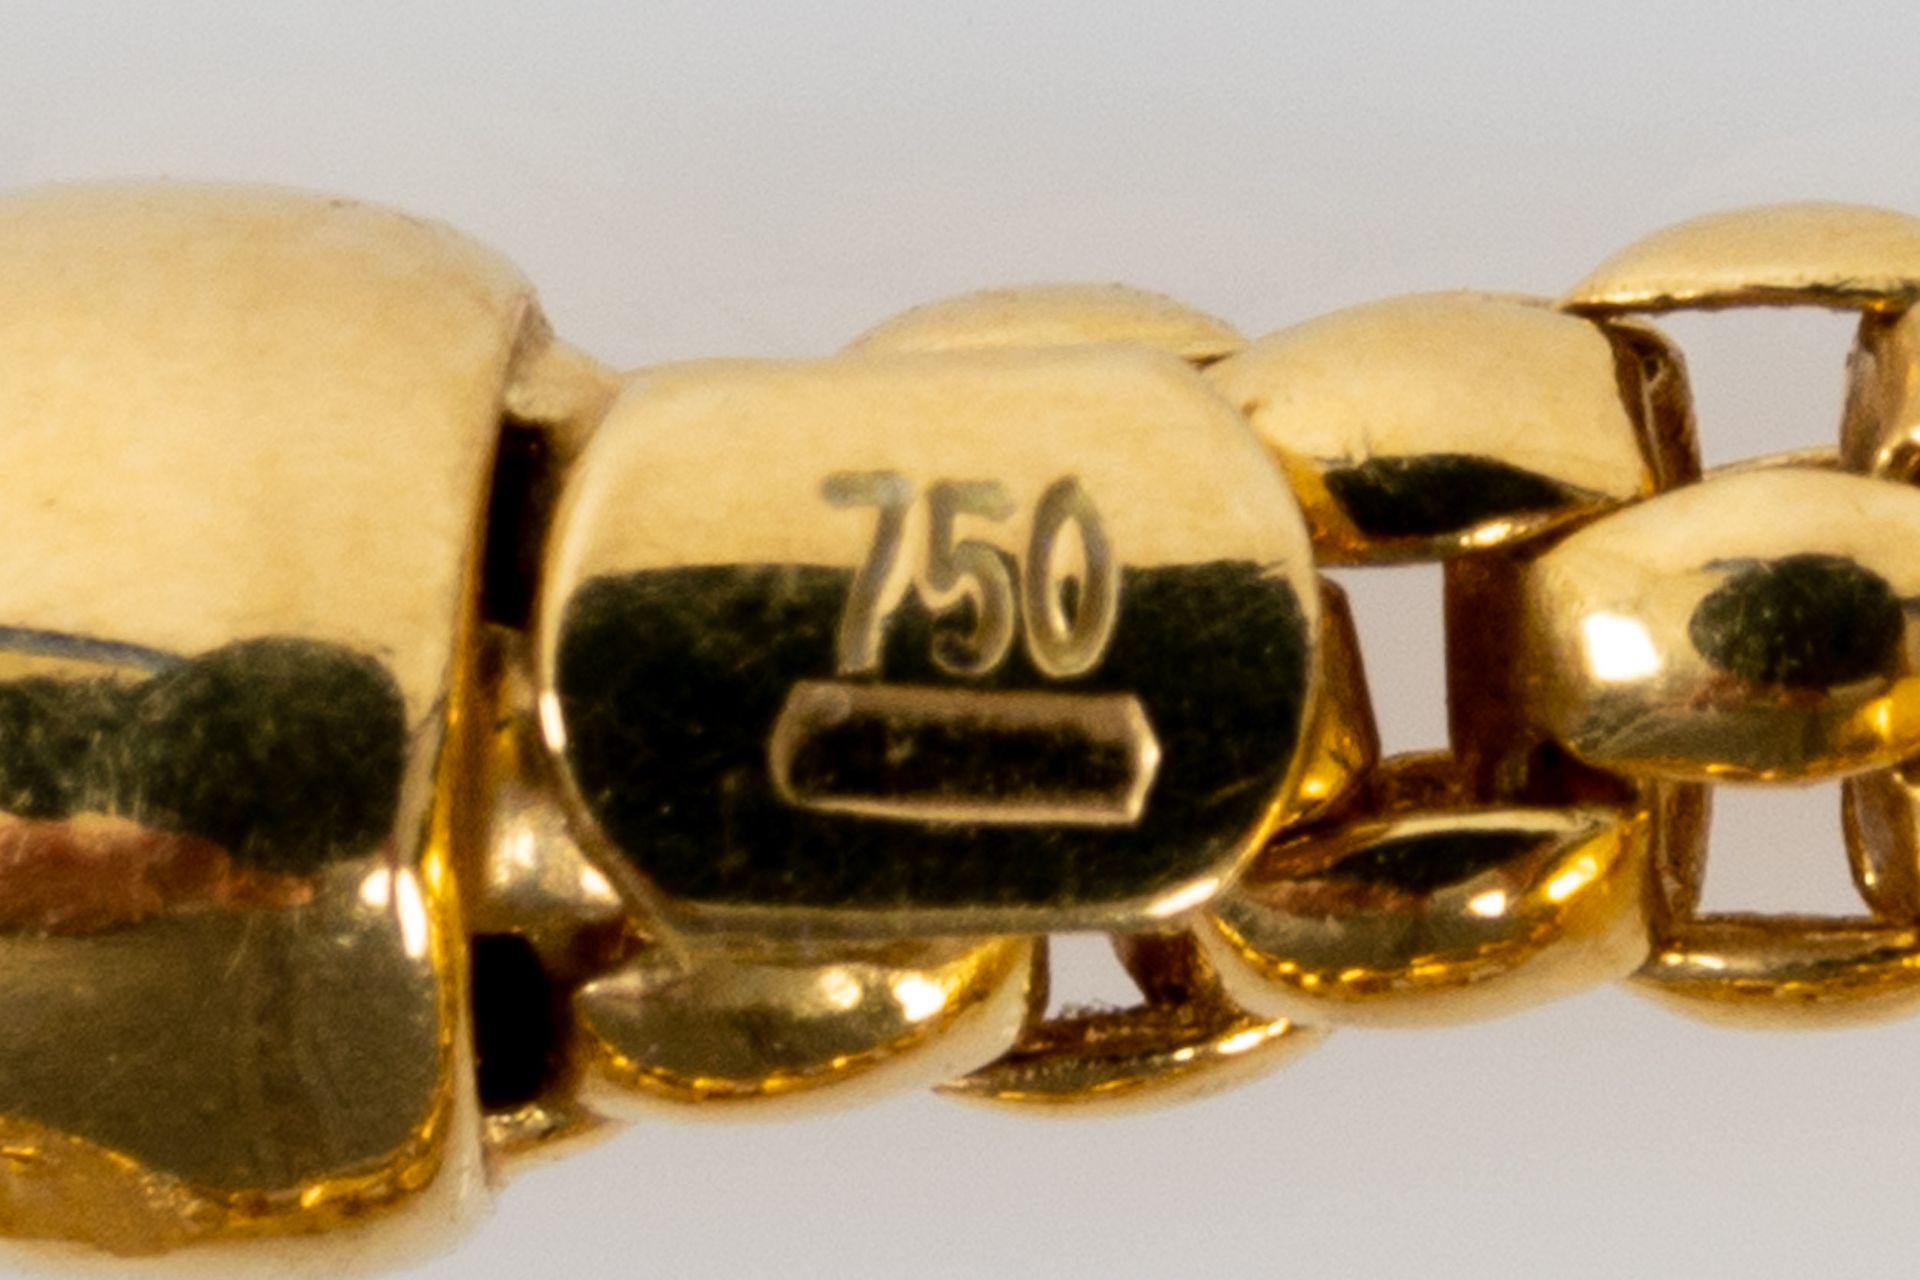 Prächtiges Smaragd-Brillant-Collier, bewegliche, ca. 46 cm lange tauförmige Halskette mit einer Bre - Bild 9 aus 10